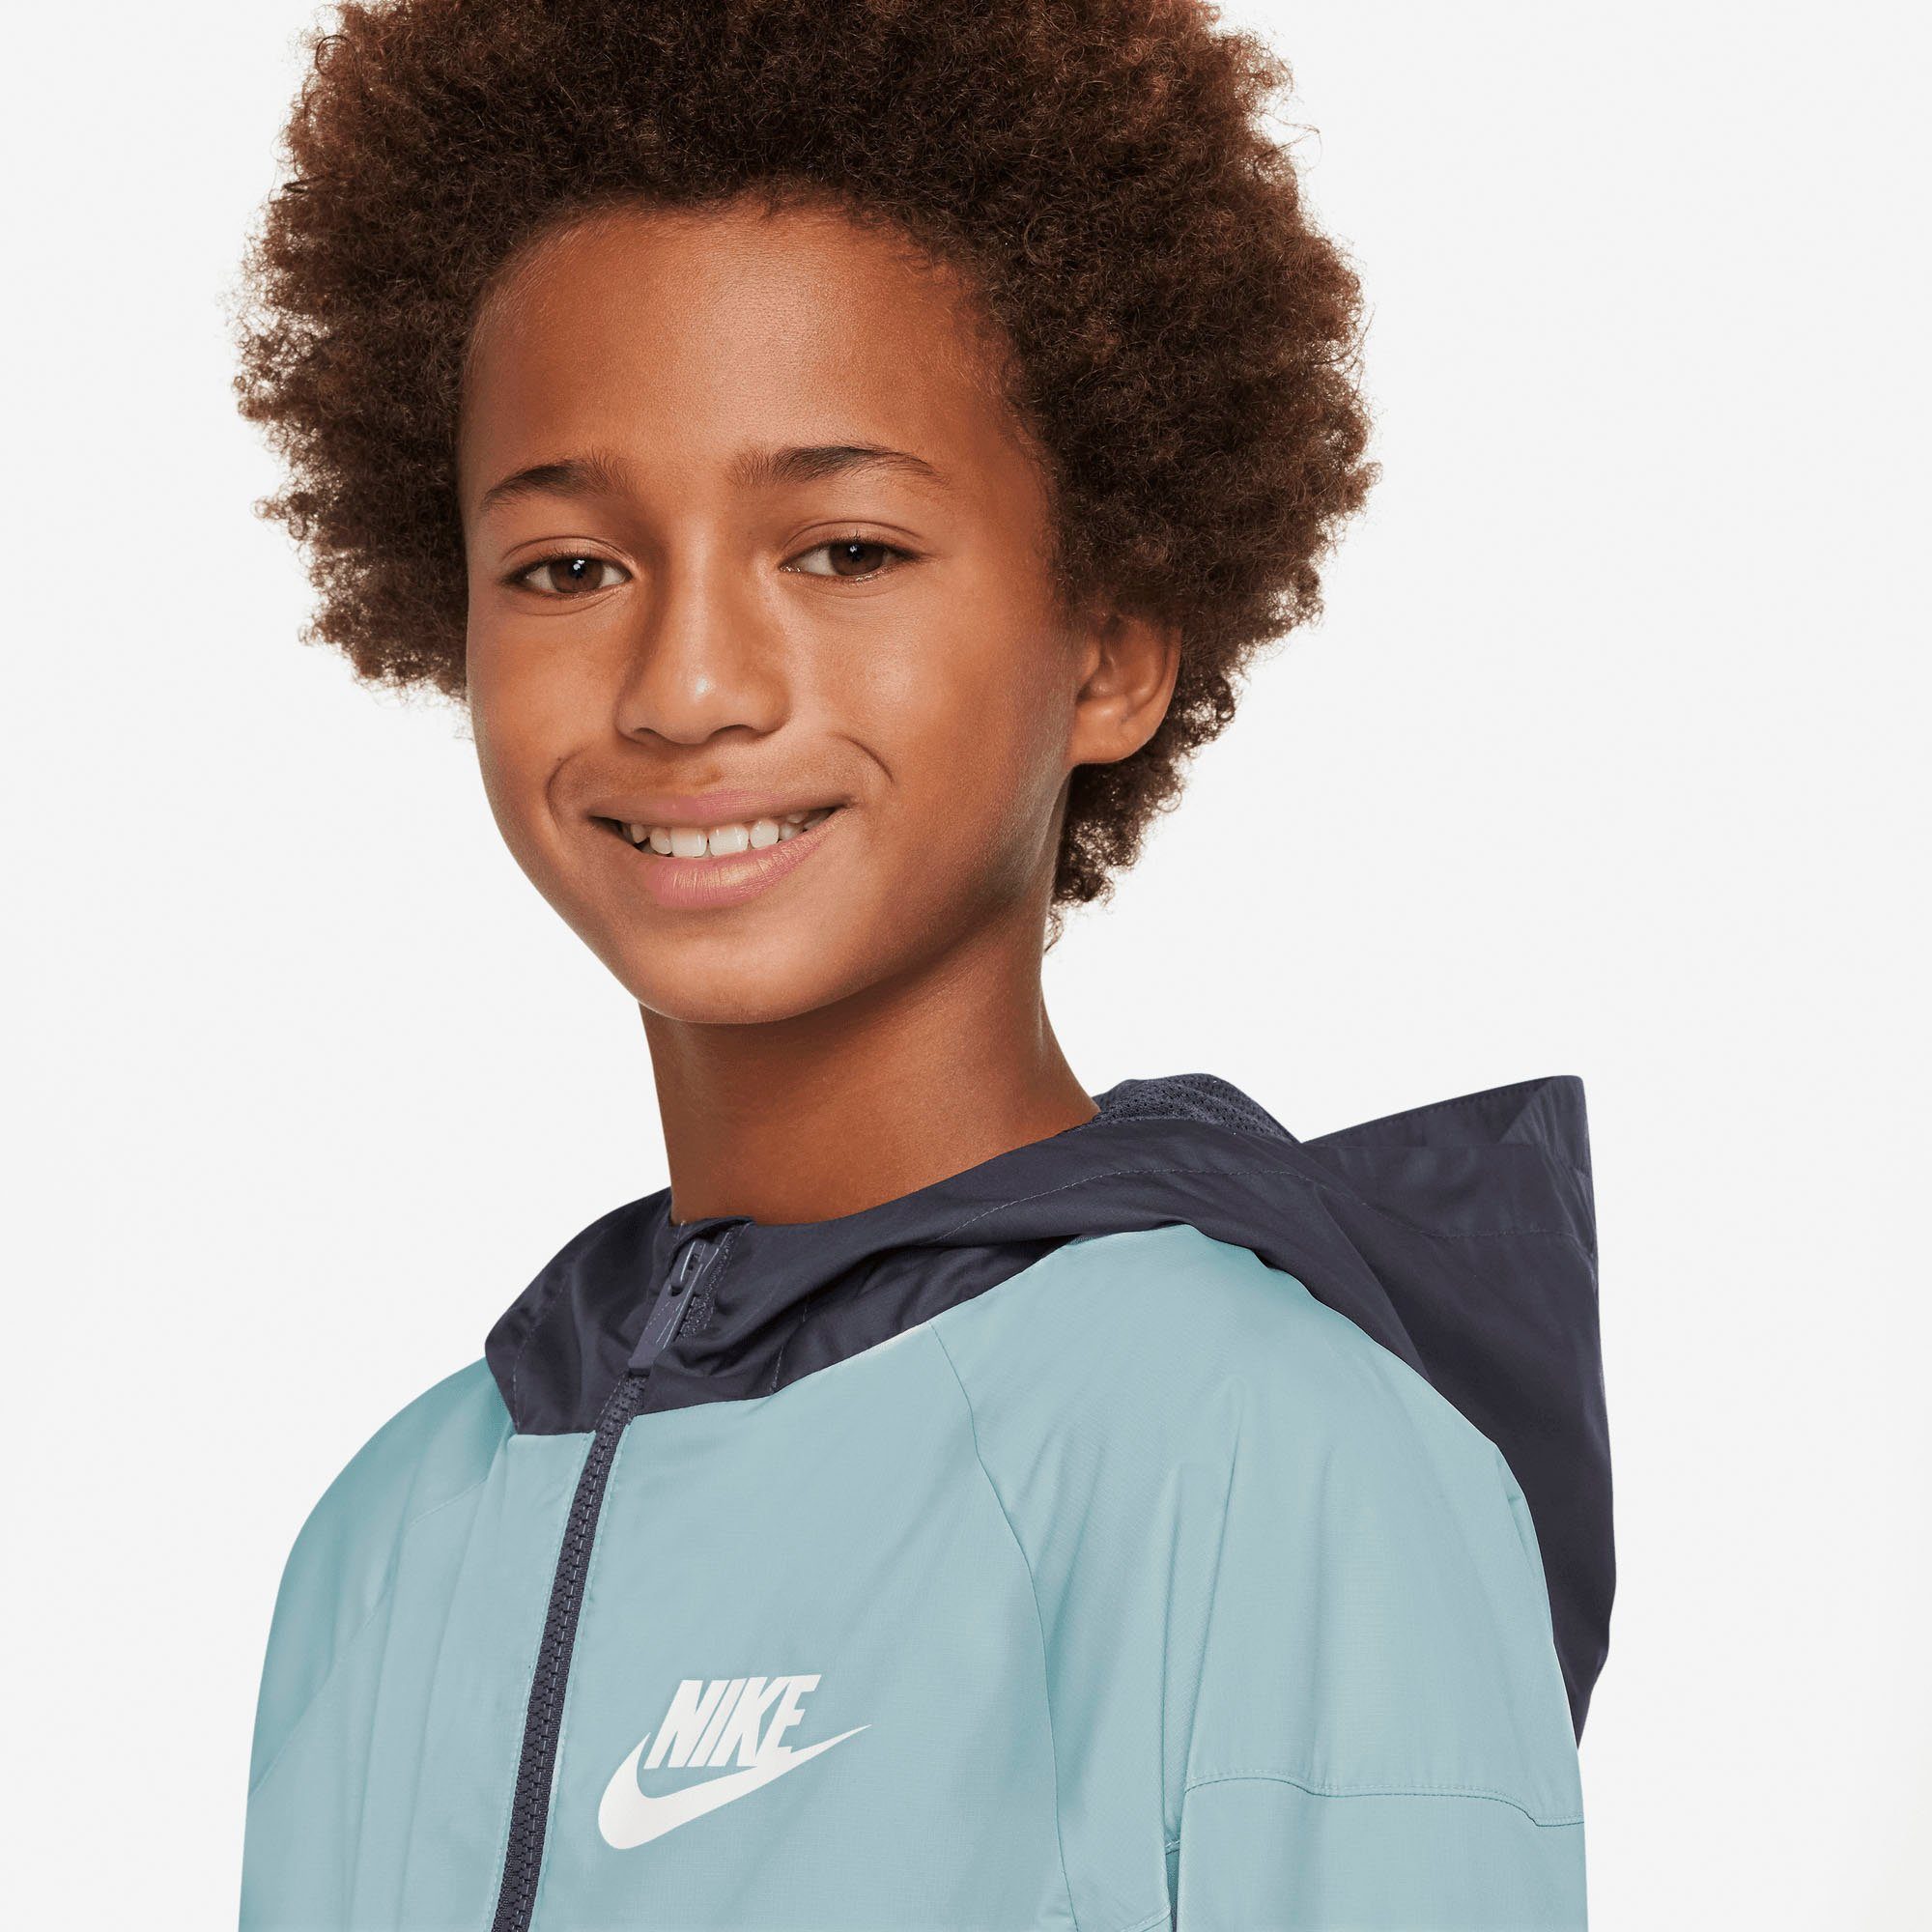 grau Nike Sweatjacke Kids' Jacket Windrunner Sportswear (Boys) Big